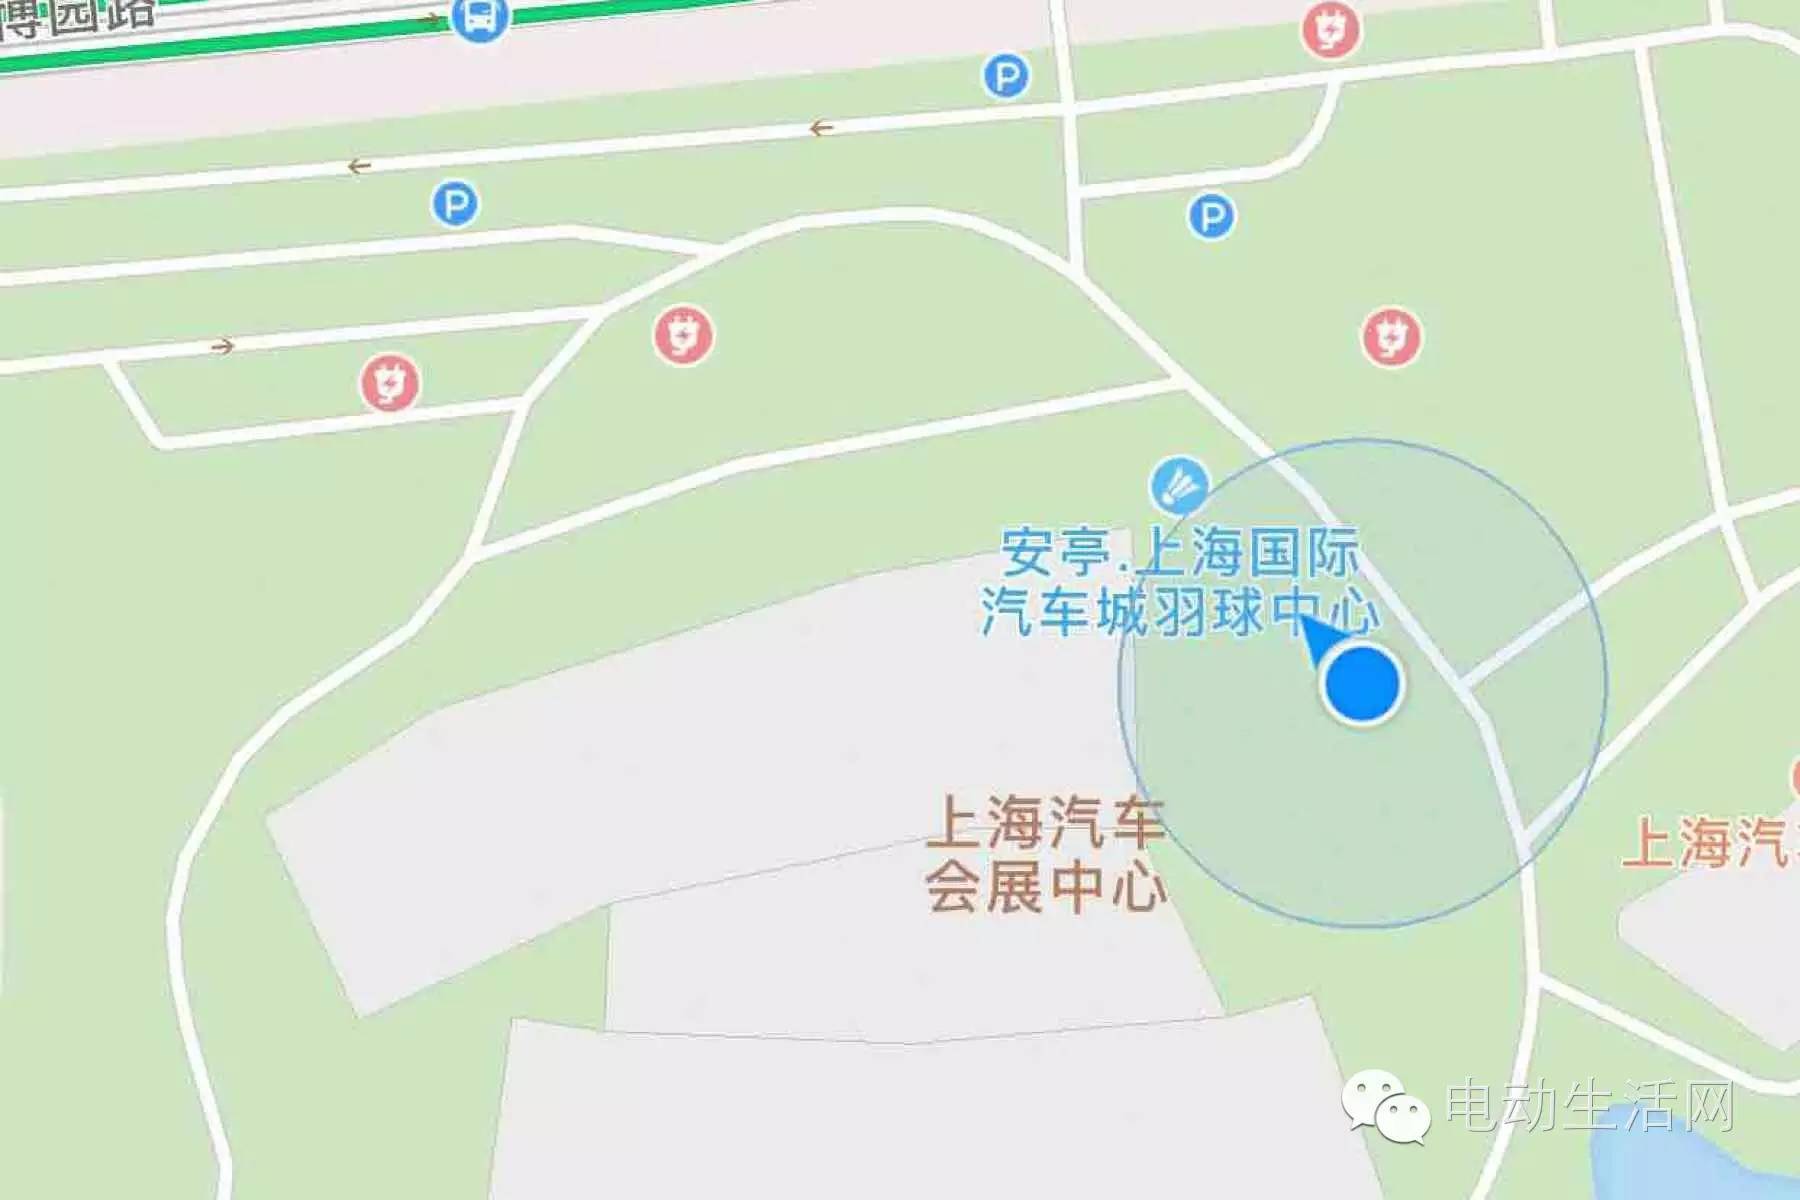 抵达魔都上海腾势京沪行之上海博览园